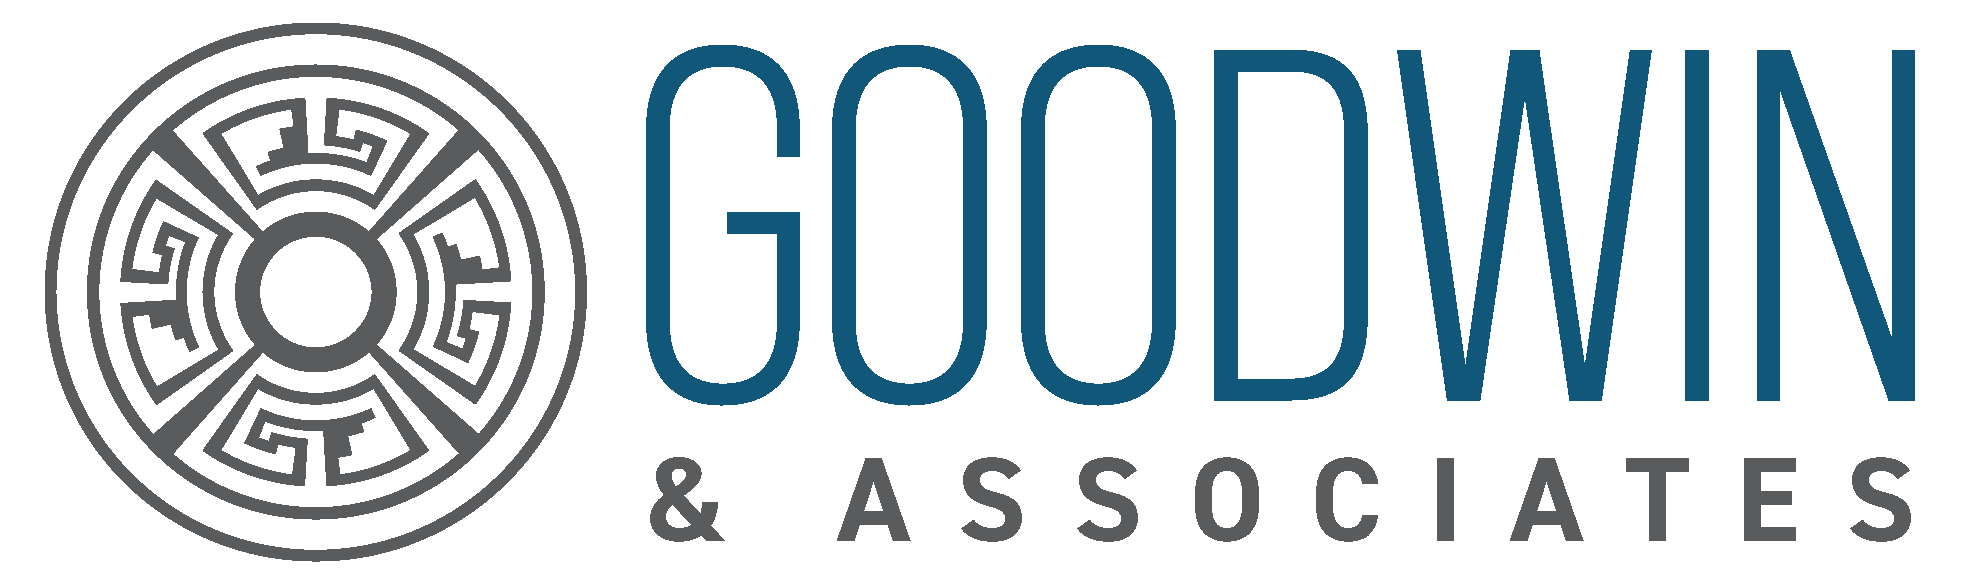 Goodwin & Associates